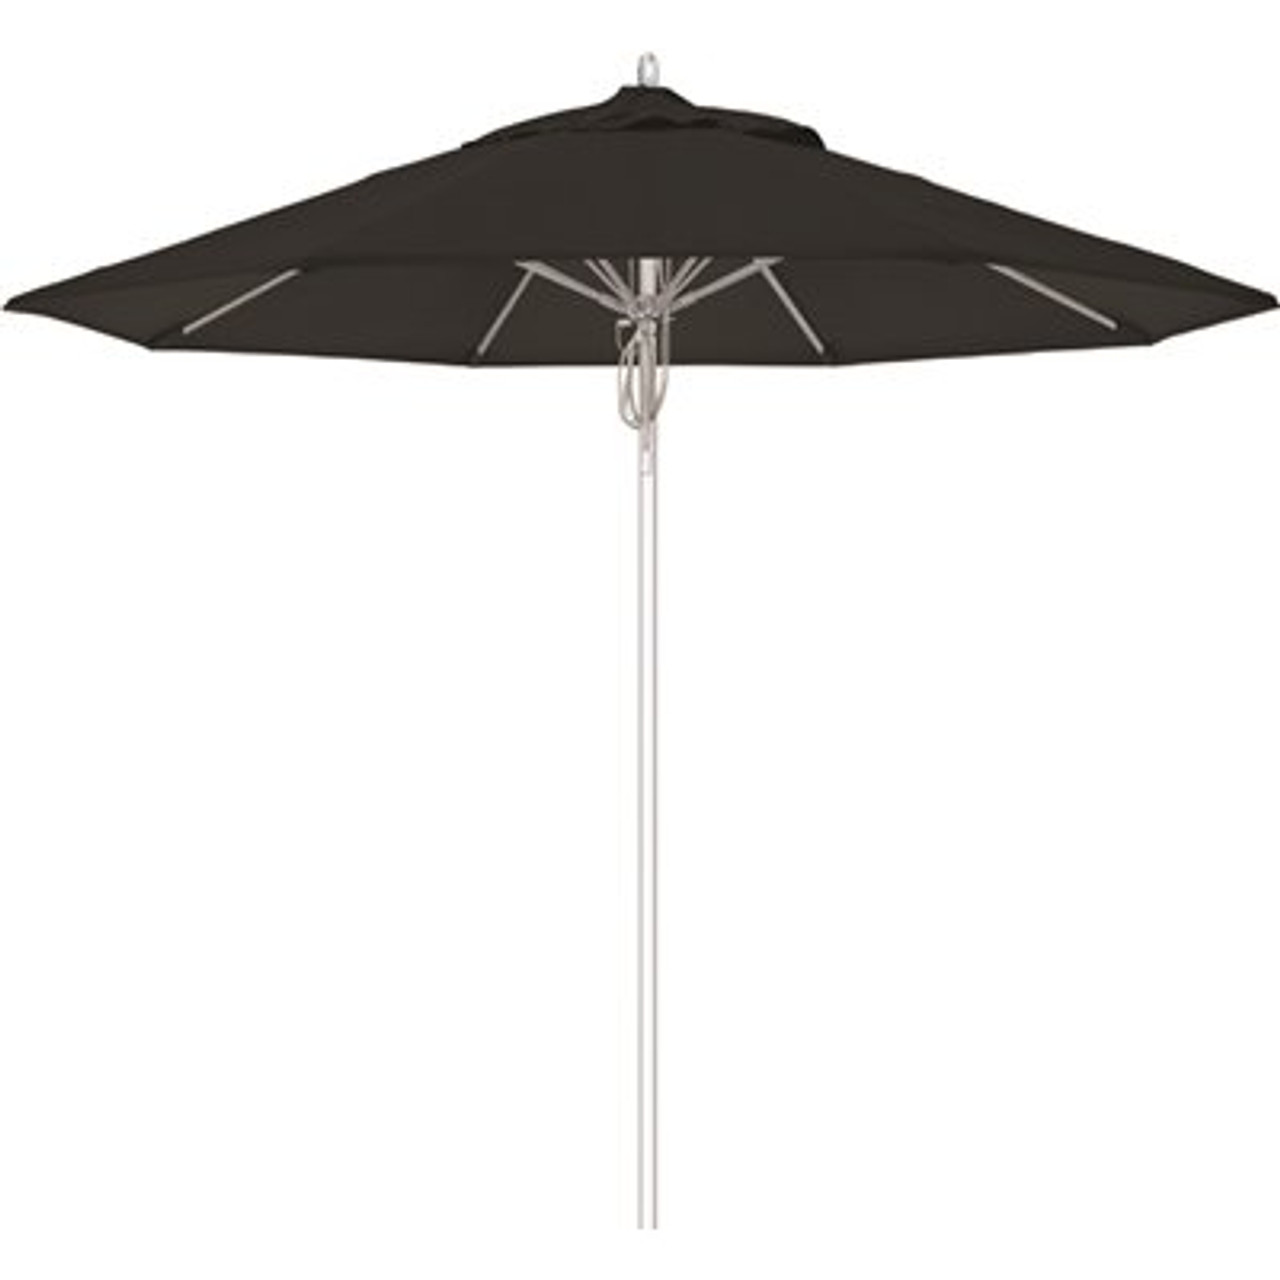 California Umbrella 9 ft. Silver Aluminum Commercial Fiberglass Ribs Market Patio Umbrella and Pulley Lift in Black Sunbrella